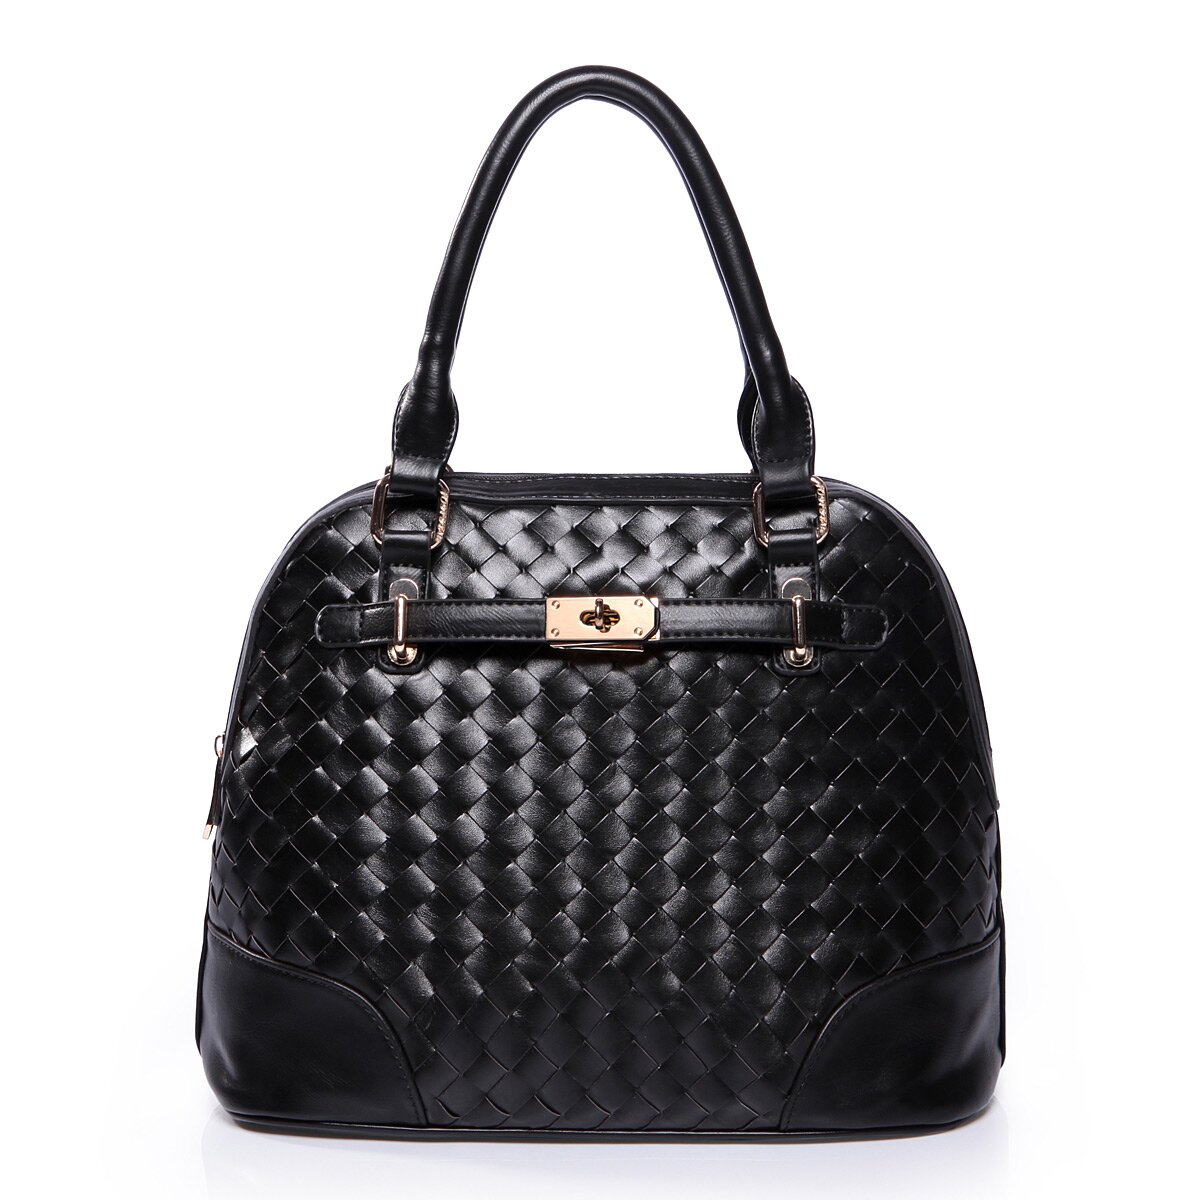 Weave Birkin women handbags Black